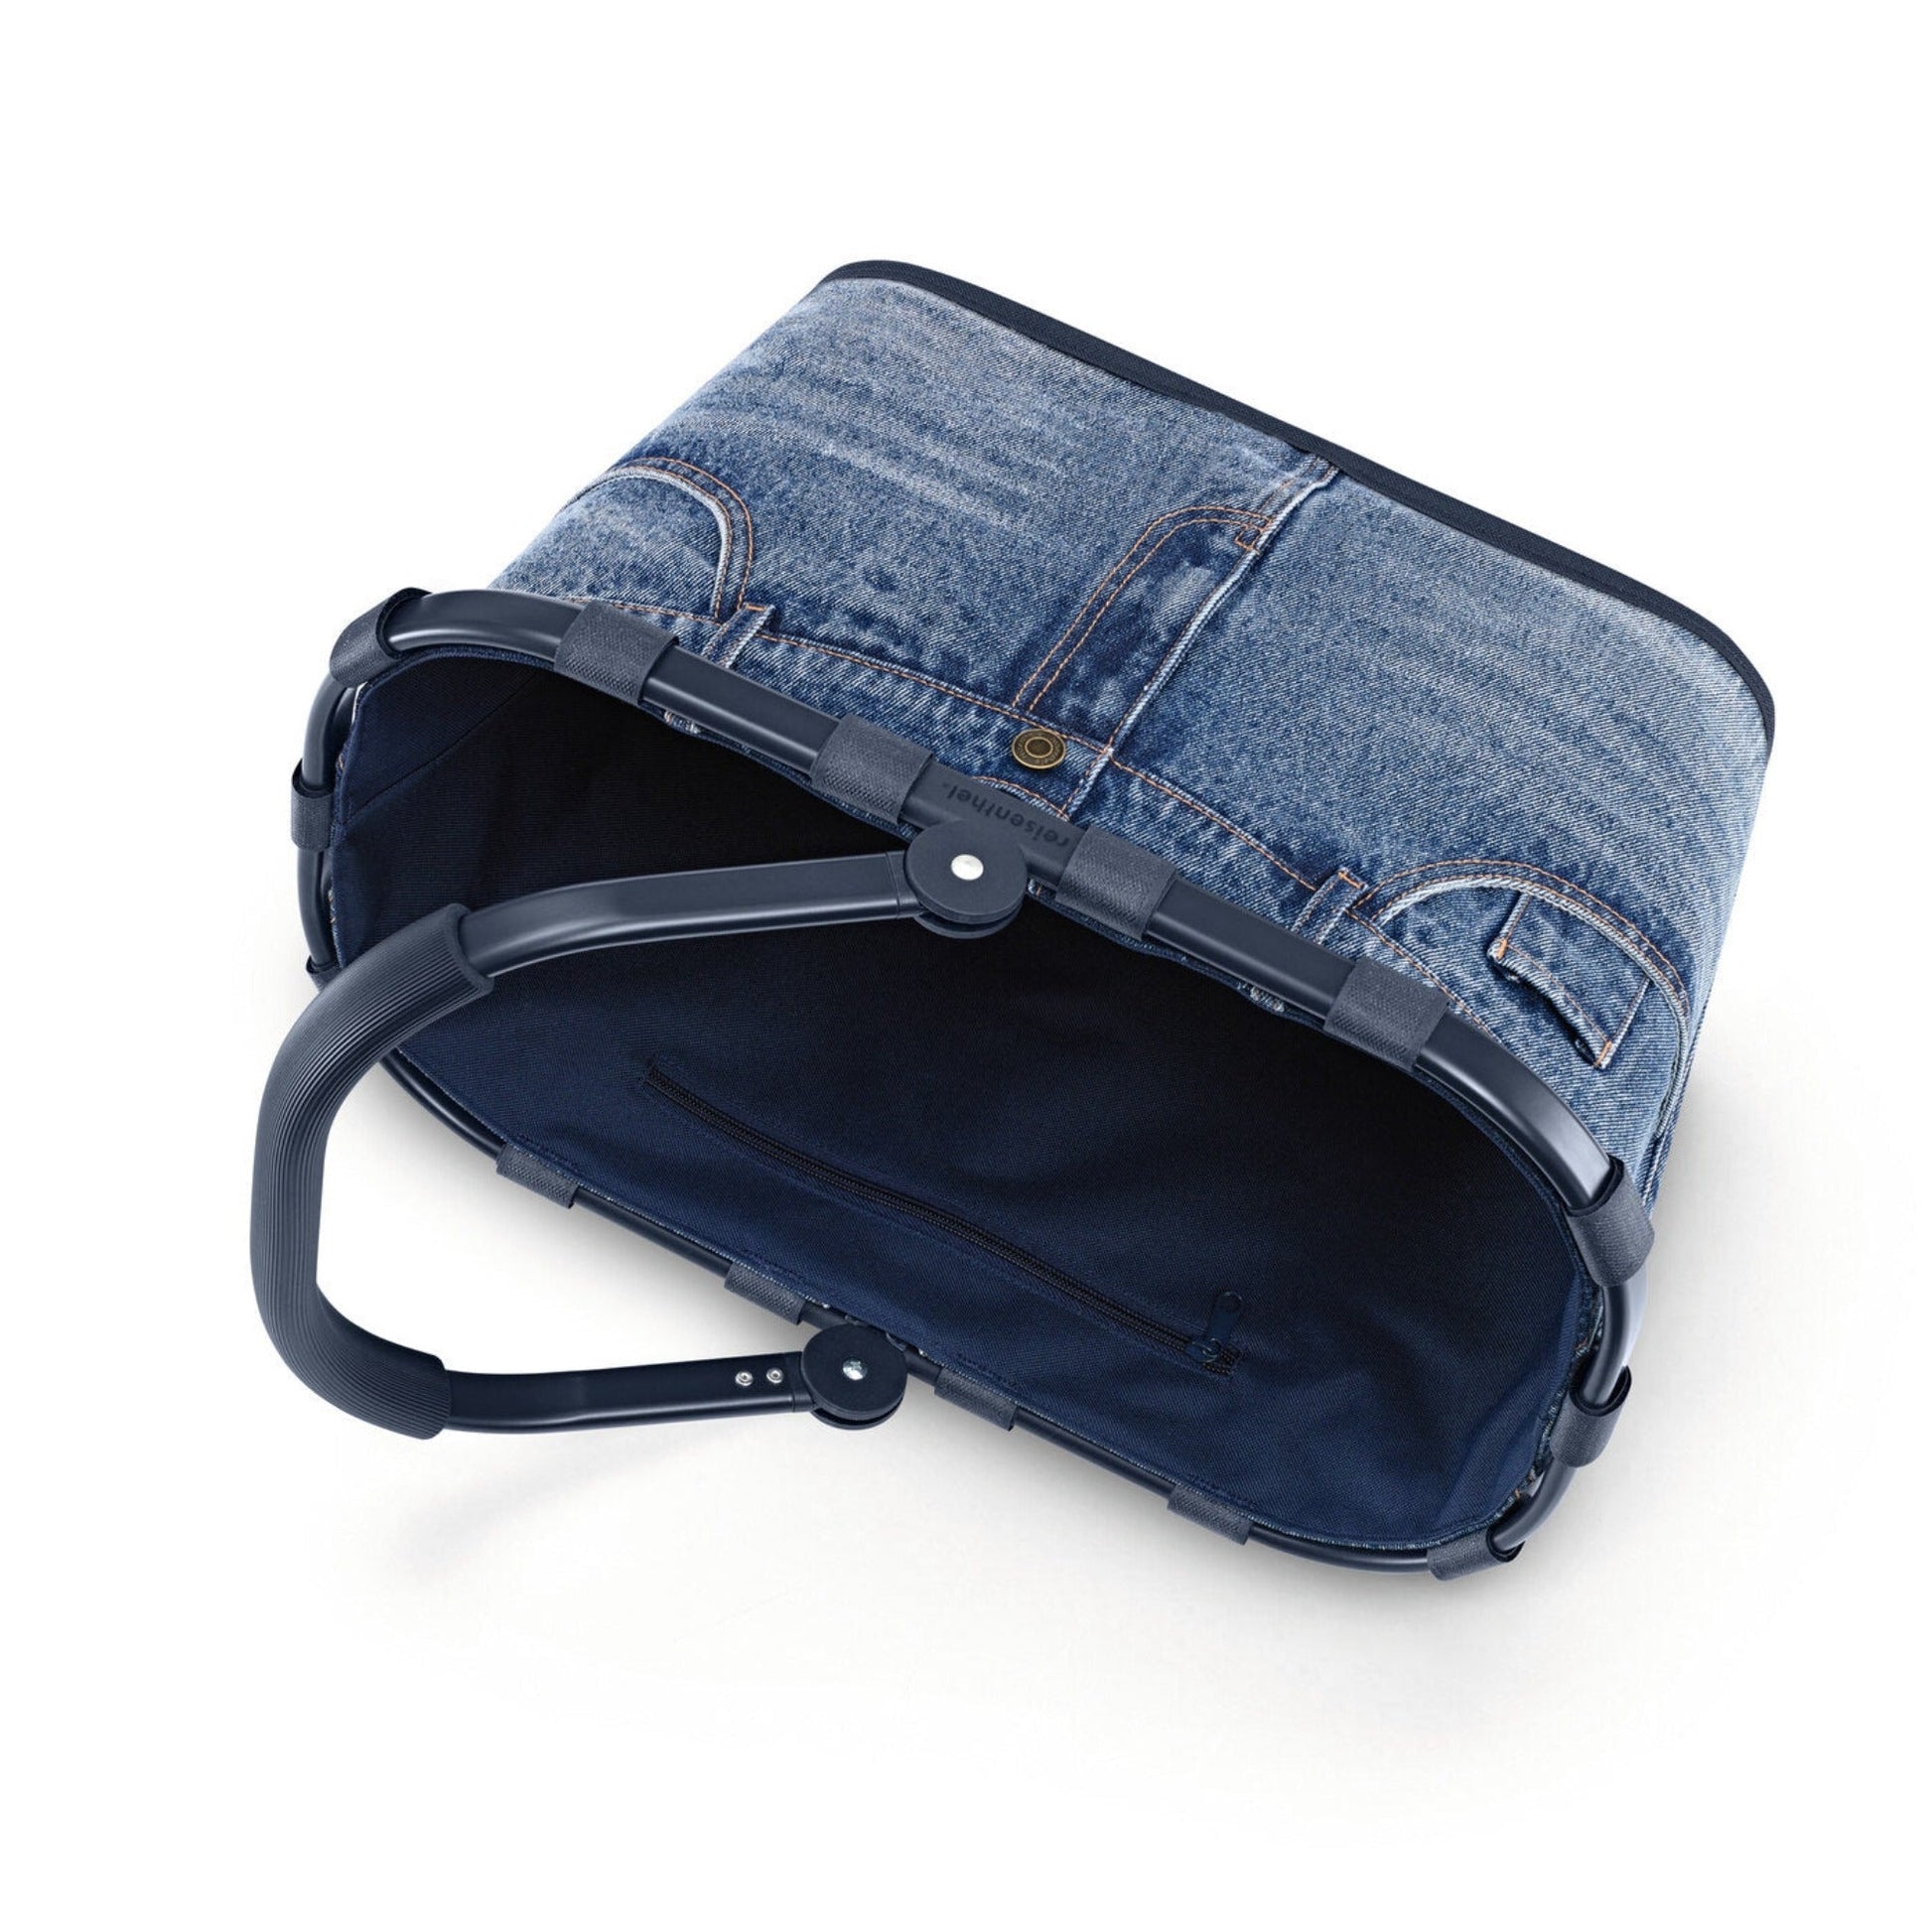 Canasto de Picnic Carrybag Jeans3#Azul